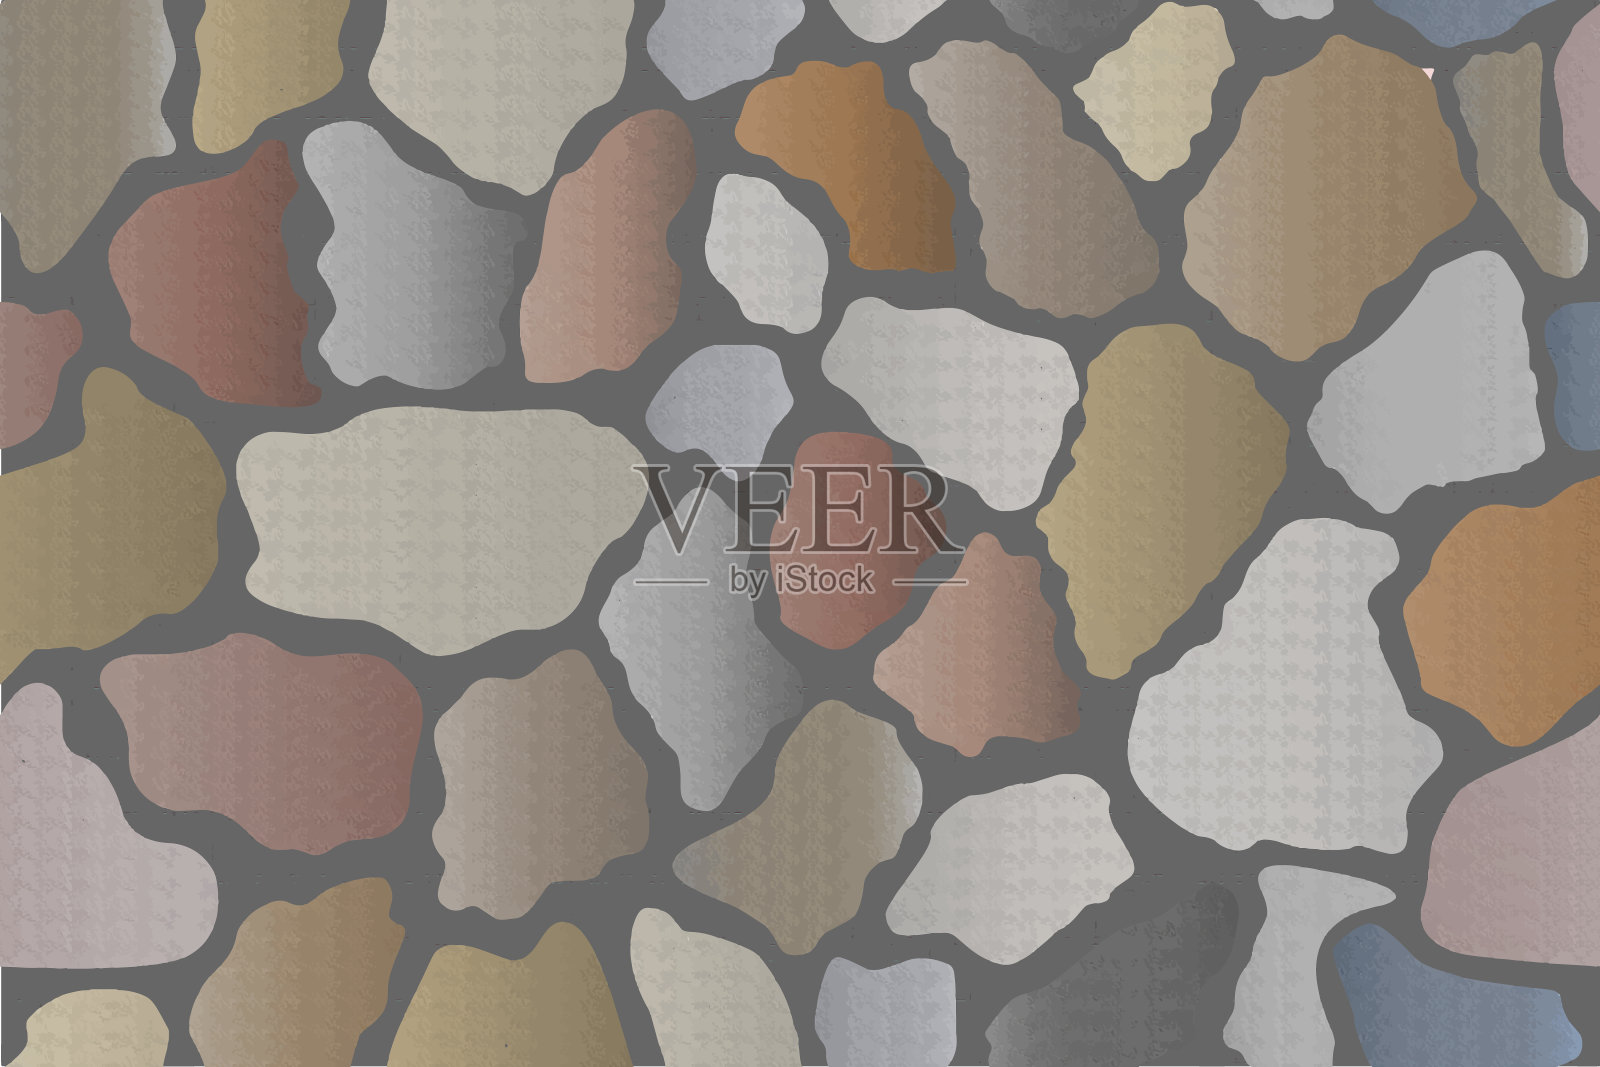 矢量图的墙壁与不同的形状和彩色石头瓷砖与灰色砂浆背景。插画图片素材